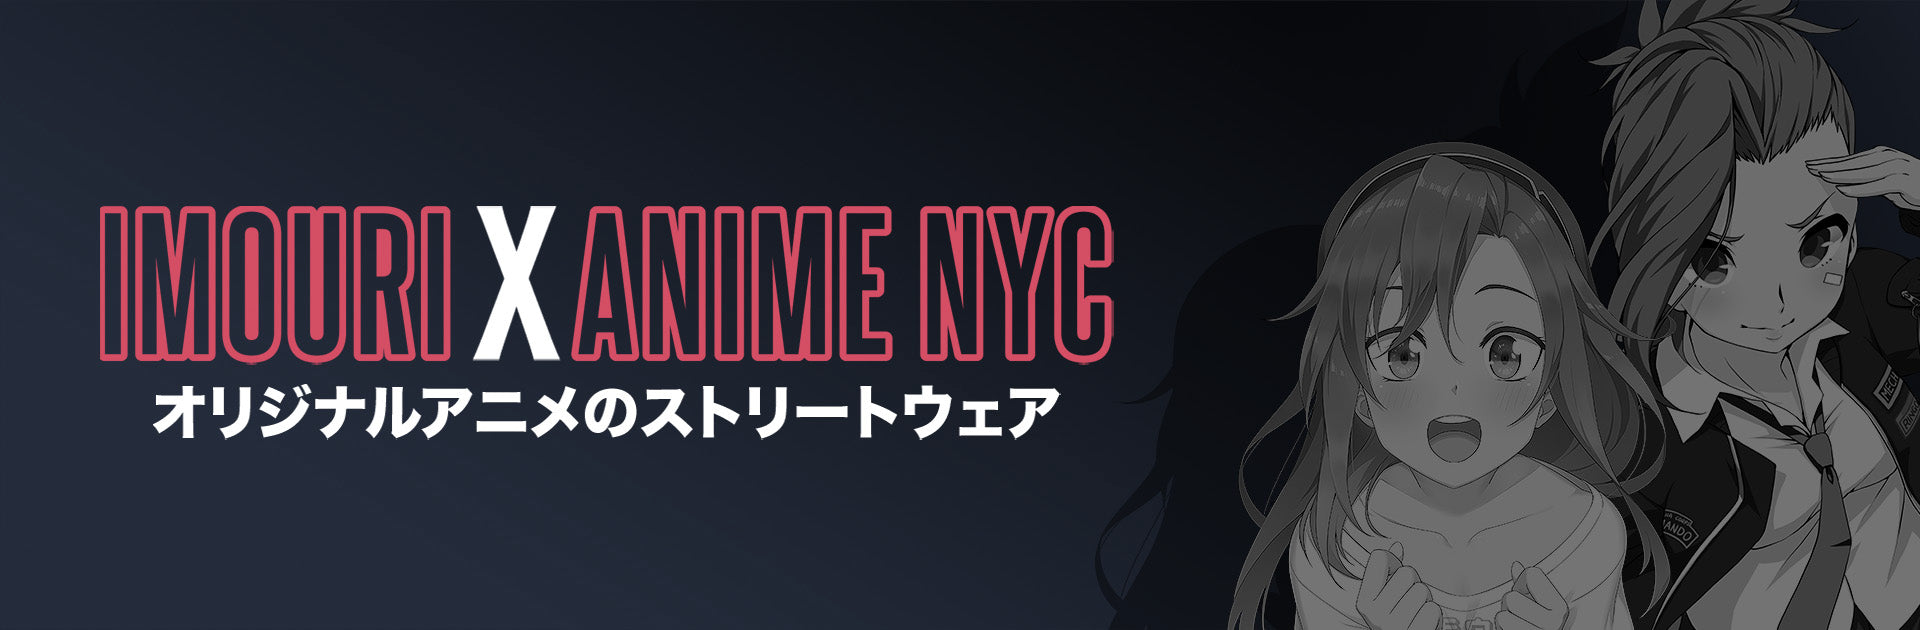 Imouri X Anime NYC